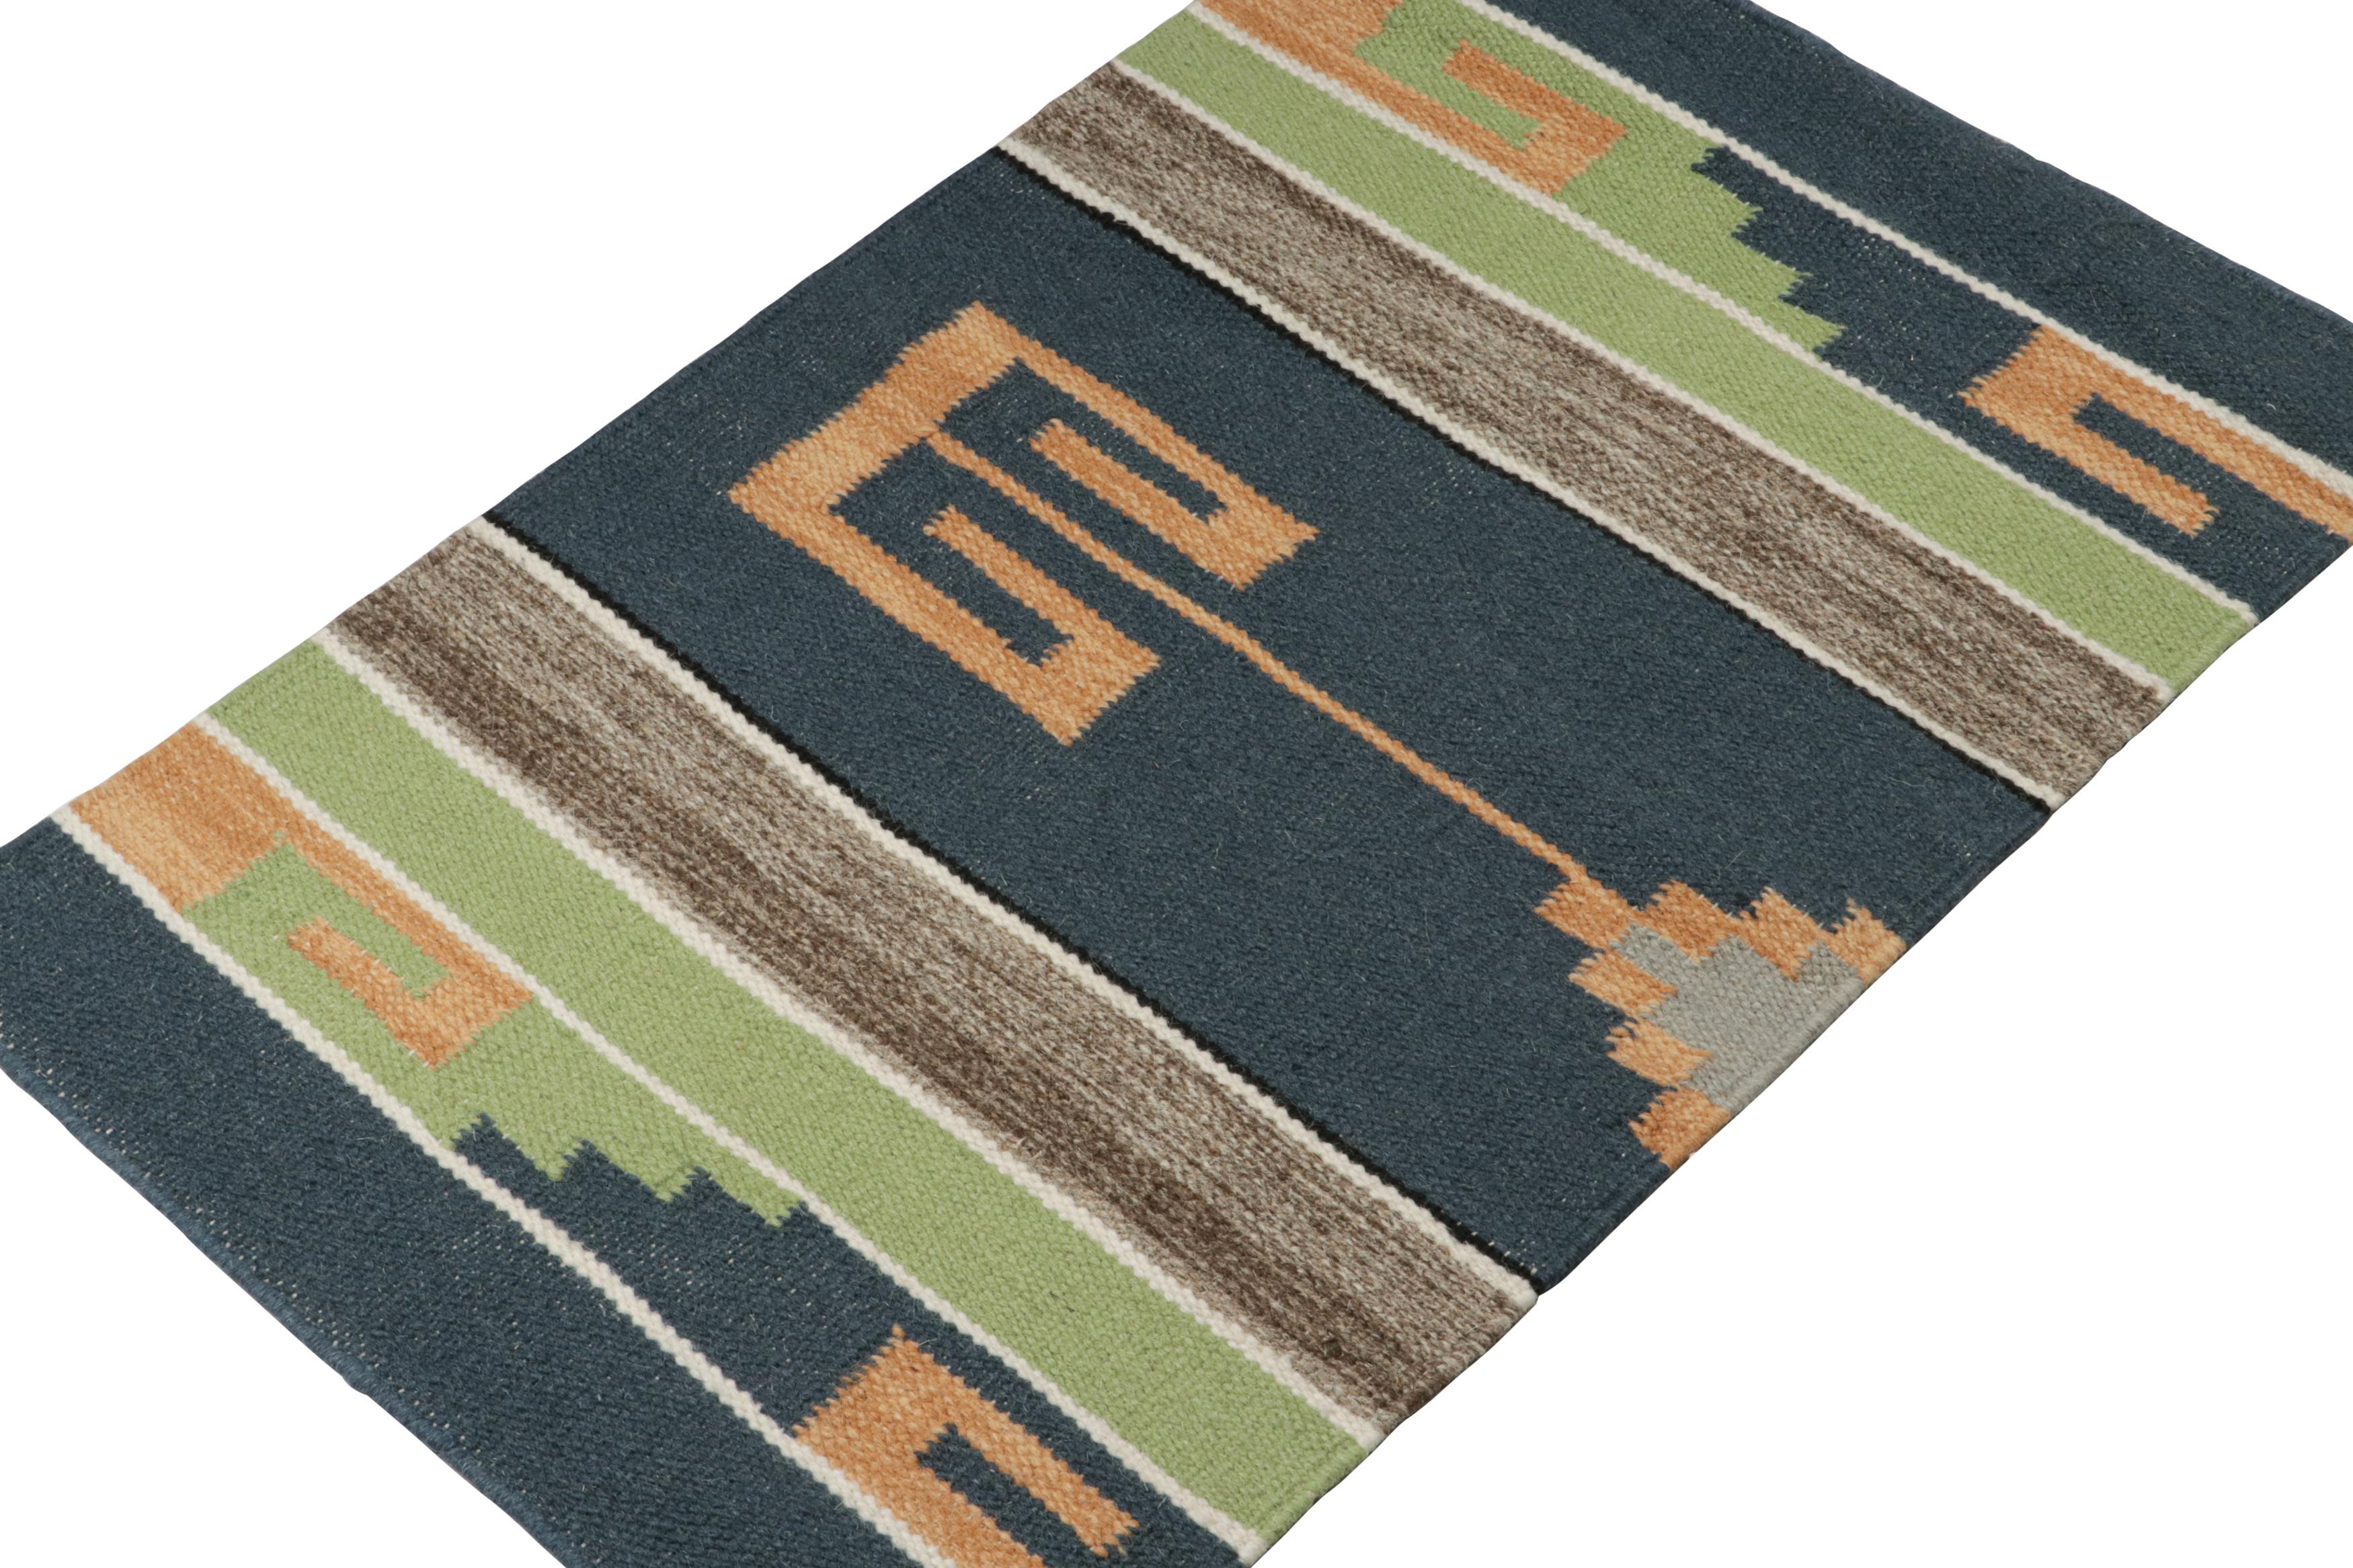 Inspirée des kilims tribaux, cette pièce de 2x3 est un nouvel ajout rafraîchissant à la collection de tissage plat de Rug & Kilim.  

Sur le Design : 

Tissé à la main en laine, ce kilim contemporain présente des motifs géométriques dans des